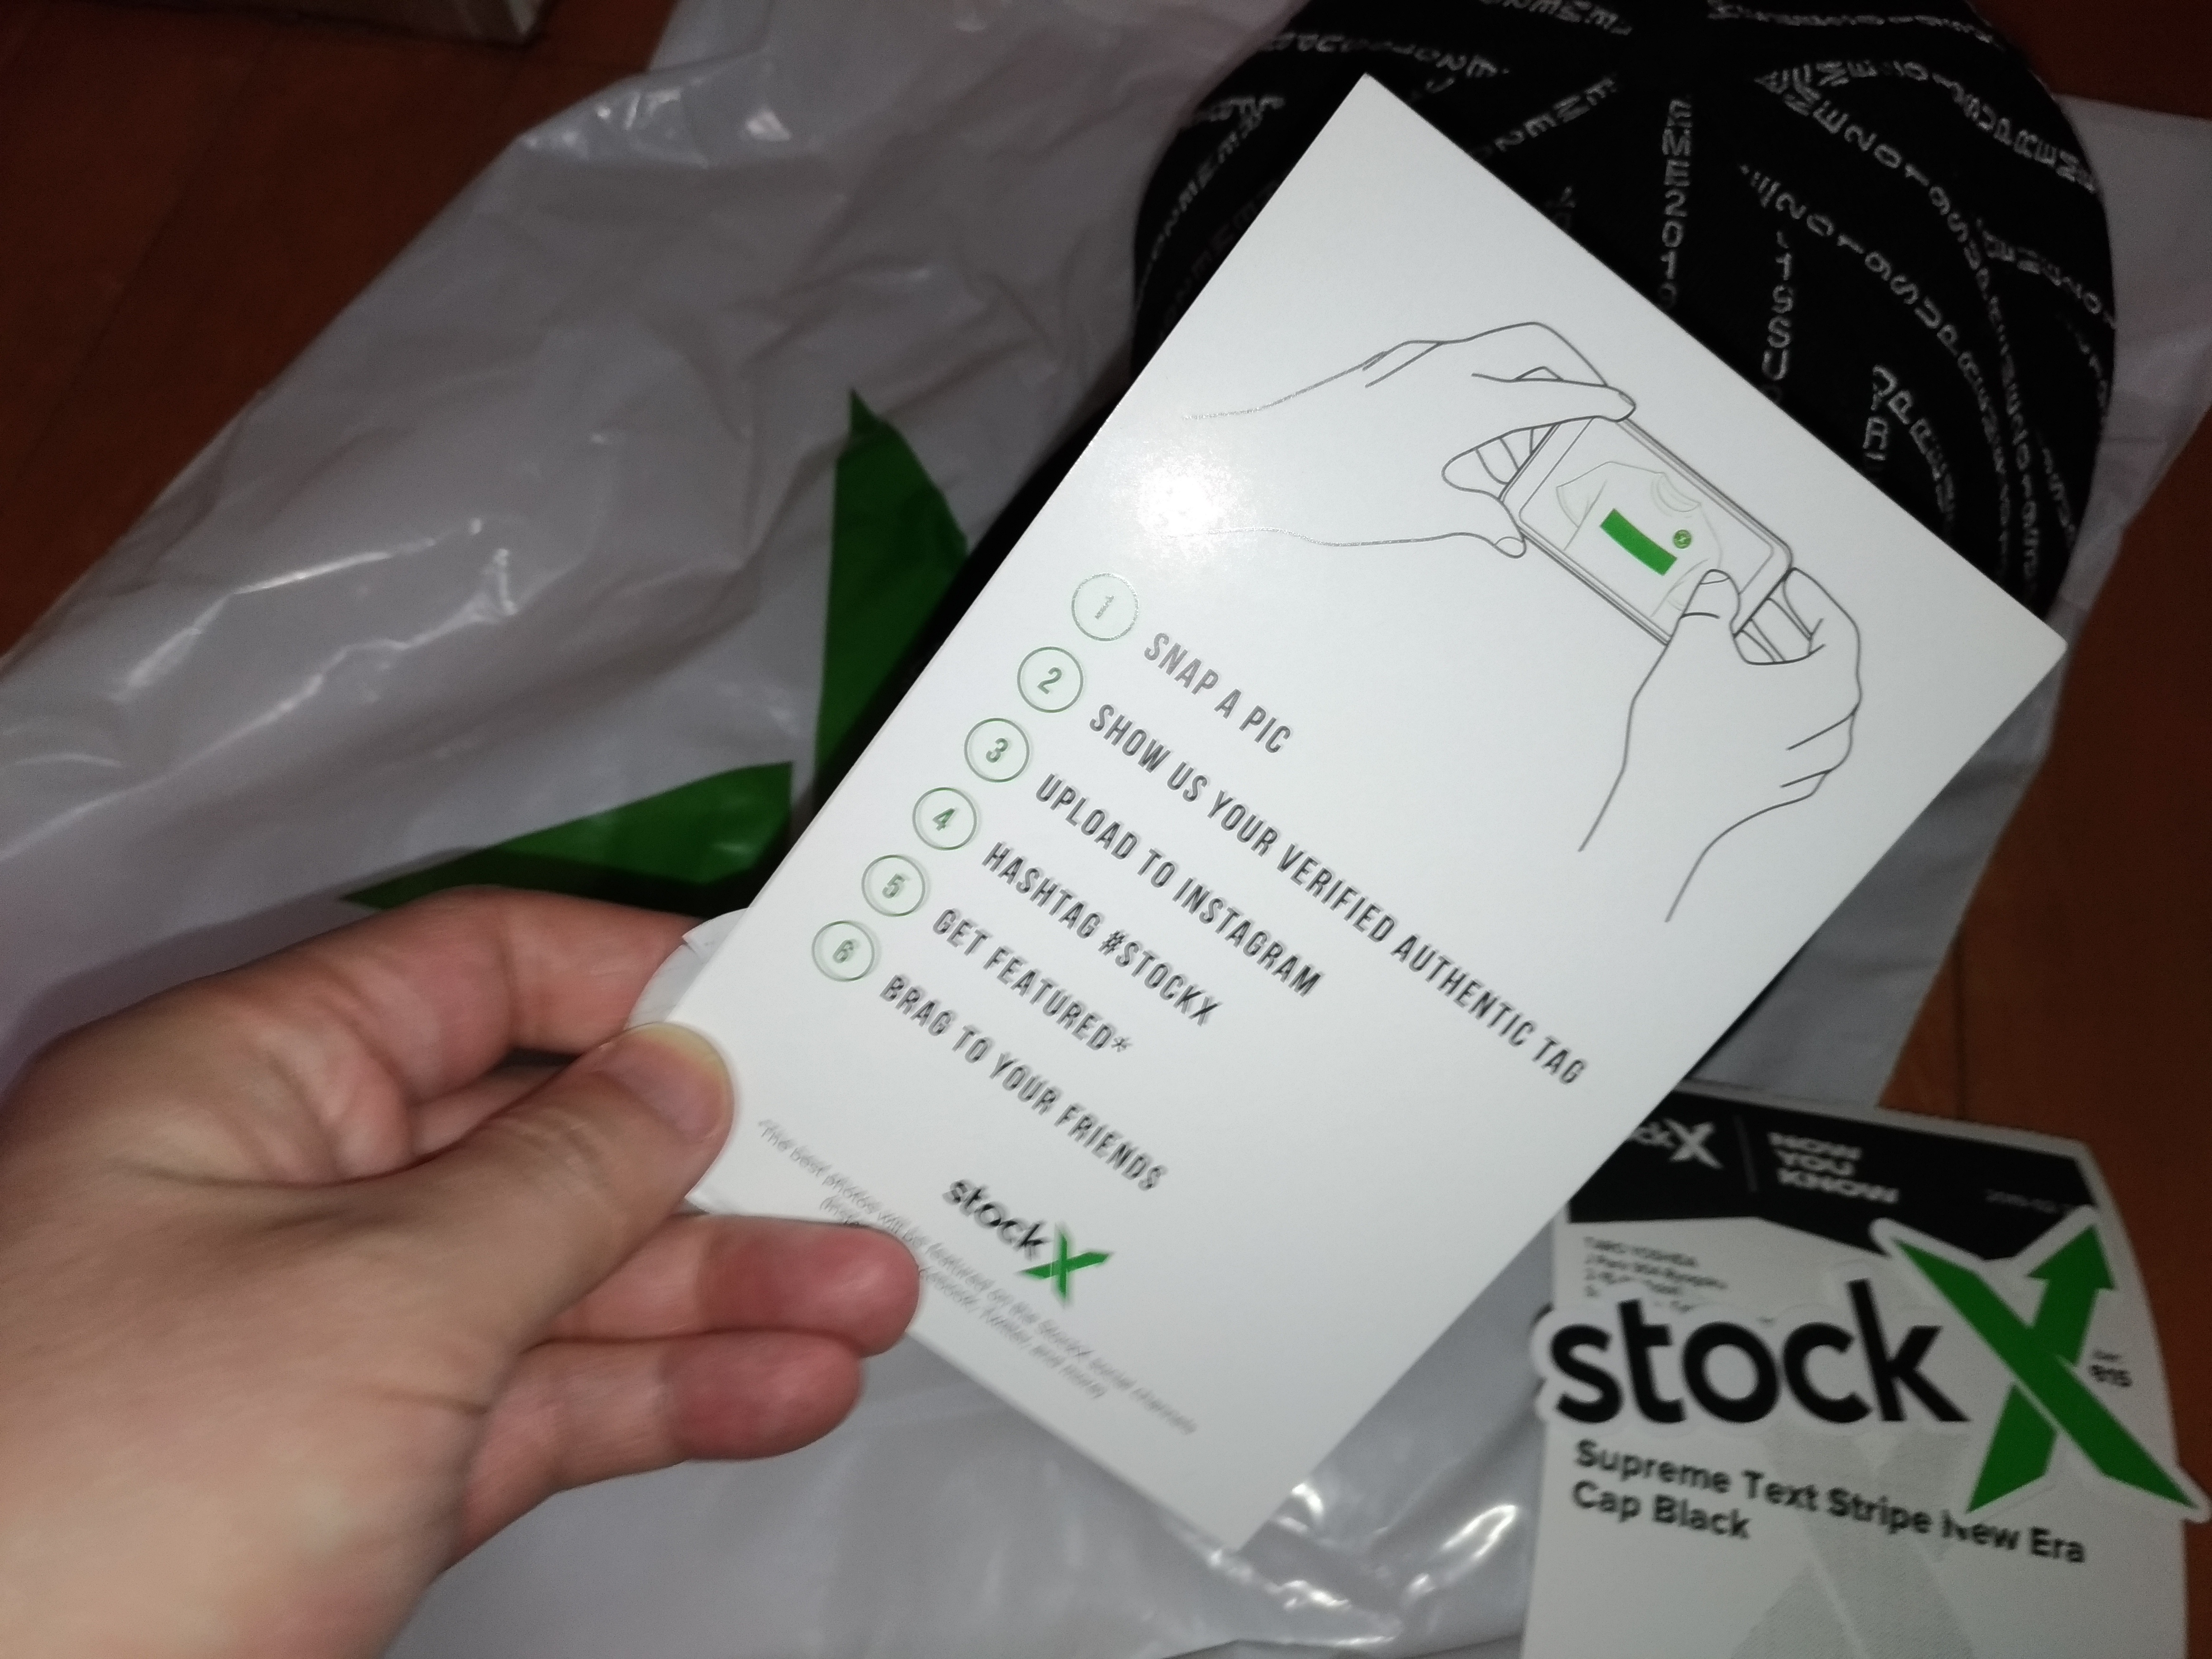 ストックx Stockx Com でシュプリームを買ってみよう 19ss fw Zenmaiのココ東京